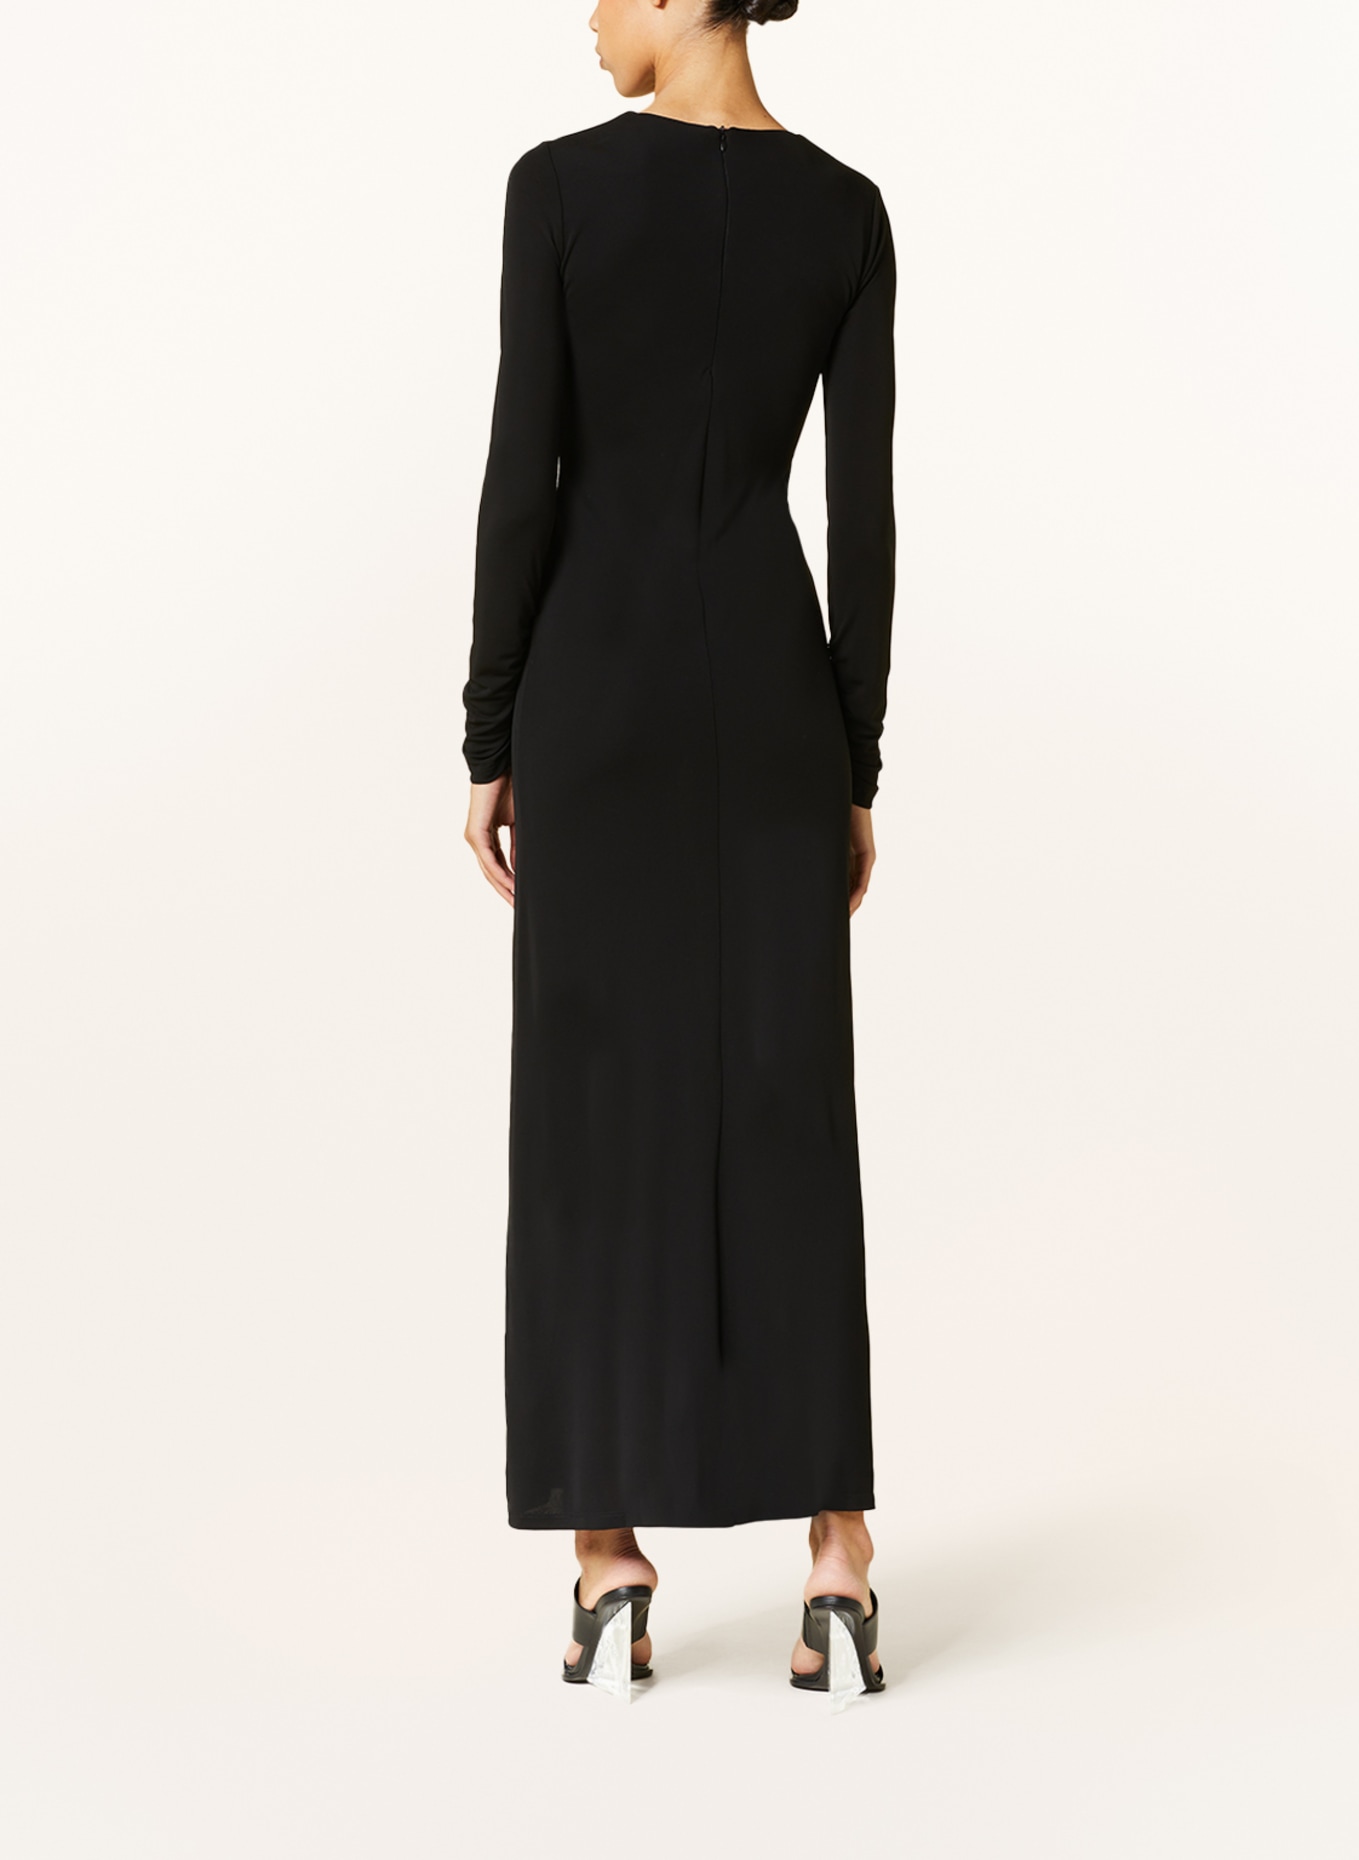 Kleid ARCED schwarz in CHRISTOPHER PALM ESBER